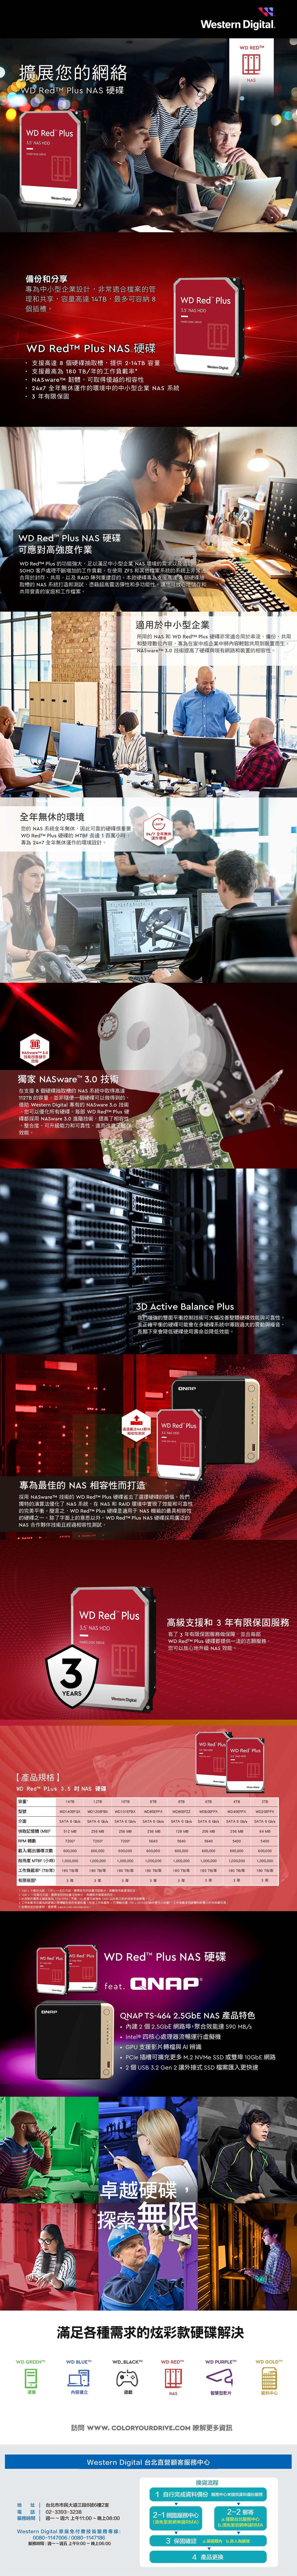 擴展您的網絡 Redt  NAS 硬碟 Red  3 NAS HDD   Dgital備份和分享專為中小型企業設計,非常適合檔案的管理和共享,容量高達 4TB,最多可容納 8個插 Red  NAS 硬碟支援高達 8 個硬碟抽取槽,提供-14TB 容量支援最高為 180TB的工作負載率* NASware 韌體,可取得優越的相容性24x7 全無休運作的環境中的中小型企業 NAS 系統3 有限保固 WD Red 3 NAS HDDHARD   WD Red  NAS 硬碟可應對高強度作業WD  Plus 的功能強大,足以滿足中小型企業 NAS 環境的需求以及協助SHO 客戶處理不斷增加的工作負載,在使用 ZFS 和其他檔案系統的系統上非常適合用於封存、共用,以及 RAID 陣列重建目的。本款硬碟專為支援高達 8 個硬碟抽取槽的 NAS 系統打造和測試,憑藉超高靈活彈性和多功能性,讓您可放心儲存和共用寶貴的家庭和工作檔案。全無休的環境WD REDMNAS適用於中小型企業所用的 NAS 和 WD  Plus 硬碟非常適合用於串流、備份、共用和整理數位內容,專為在家中或企業中將內容輕鬆共用到裝置而生。NASwareTM 30技術提高了硬碟與現有網路和裝置的相容性。-247-您的 NAS 系統全無休,因此可靠的硬碟很重要。WD  Plus 硬碟的 MTBF長達1百萬小時,專為247全年無休運作的環境設計。247 全年無休運作環境NASwareTM 3.0技術改善儲存效能獨家 NASware 3.0 技術在支援8個硬碟抽取槽的 NAS 系統中取得高達112TB 的容量,並非隨便一個硬碟可以做得到的借助 Western  專有的 NASware 3.o 技術您可以優化所有硬碟。每部 WD Redt Plus 硬碟都採用 NASware 3.0 進階技術,提高了相容性整合度、可升級能力和可靠性,進而改進了儲存效能。. M-TFJ2 1328 3D Active Balance Plus我們增強的雙面平衡控制技術可大幅改善整體硬碟效能與可靠性。未正確平衡的硬碟可能會在多硬碟系統中導致過大的震動與噪音、長期下來會降低硬碟使用壽命並降低效能。QNAPWD Red Plus通過廣泛NAS夥伴相容性測試 NAS HDDHARD DISK DRIVEWestern Digital專為最佳的 NAS 相容性而打造O採用 NASwareTM 技術的 WD  Plus 硬碟省去了選擇硬碟的煩惱。我們獨特的演算法優化了 NAS 系統,在NAS 和 RAID 環境中實現了效能和可靠性的完美平衡。簡言之,WD  Plus 硬碟是適用于NAS 機箱的最具相容性的硬碟之一。除了字面上的意思以外。WD  Plus NAS 硬碟採用廣泛的NAS 合作夥伴技術且經過相容性測試。i.2 TMWD Red TM Plus NAS HDDHARD DISK DRIVE高級支援和 3 年有限保固服務有了3 年有限保固服務做保障,並且每部WD  Plus 硬碟都提供一流的志願服務,您可以放心地升級NAS 效能。3YEARS【產品規格】WD Red Plus   NAS 硬碟容量型號Western Digital.WD Red Plus3.5 NAS HDDWD Red Plus3.5 NAS HDDHARD DISK DRIVEWestern DigitalWestern Digital14TB12TB10TB8TB8TB6TB4TBWD120EFBX WD101EFBXWD80EFPXWD80EFZZWD60EFPXWD40EFPXWD140EFGXSATA 6Gb/s SATA 6Gb/s SATA 6Gb/sSATA 6Gb/s SATA 6Gb/s2TBWD20EFPXSATA 6Gb/s SATA 6Gb/s SATA 6Gb/s快取記憶體(MB)512 MB256MB256MB256MB128MB256MB256MB64 MBRPM 轉數720037200356405640564054005400載入/載出循環次數 600,000 耐用度 MTBF (小時) 1,000,000600,000600,000600,000600,000600,000600,0001,000,0001,000,0001,000,0001,000,0001,000,0001,000,000600,0001,000,000工作負載率(TB/年)180 TB/年180TB/年180 TB/年180TB/年180TB/年180TB/年180TB/年180 TB/年有限保固 53年3年3年3年3年3年3年3年1 1GB = 十億位元組,1TB=一元組。實際使用的容量可能較少,具體視作業環境而定。2 1MB = 一百萬位元組,實際使用的容量可能較少,具體視作業環境而定。3 此型號的實際主軸馬達為7200 RPM;不過,ID裝置可能報告 5400 以反映之前的效能等級標稱。4工作負載率定義為與硬碟之間的使用者資料量。年度工作負載率=傳輸容量(TB)x(8760/記錄的運作小時數)。工作負載率因硬體和軟體元件和架構而異。5 如需保固詳細資料,請參閱 support.wdc.com/warranty。WD Red PlusWD Red Plus NAS HDD3.5 NAS HDDHARD DISK DRIVEWestern DigitalWestern DigitalQNAPWD Red Plus NAS 硬碟feat. QNAP2QNAP TS-464 2.5GbE NAS 產品特色內建 2 個 2.5GbE 網路埠,聚合效能達 590 MB/sIntel® 四核心處理器流暢運行虛擬機GPU支援影片轉檔與AI 辨識PCle 插槽可擴充更多 M.2 NVMe SSD 或雙埠 10GbE 網路2 個 USB 3.2 Gen 2 讓外接式 SSD 檔案匯入更快速卓越硬碟,探索無限滿足各種需求的炫彩款硬碟解決WD GREENTWD BLUE™WD_BLACKTMWD RED™WD PURPLE™WD GOLD™運算內容建立遊戲NAS智慧型影片資料中心訪問 . COLORYOURDRIVE.COM 瞭解更多資訊Western Digital 台北直營顧客服務中心換貨流程地 址  台北市市民大道三段8號6樓2室02-3393-3238電話服務時間週一~ 週六 上午11:00~晚上08:00Western Digital 原廠免付費技術服務專線:0080-1147006/0080-1147186服務時間:週一~週五上午9:00~晚上06:001 自行完成資料備份服務中心未提供資料備份服務2-1 親臨服務中心(須先至官網申請RMA)2-2郵寄a.僅限台北服務中心b.須先至官網申請RMA3 保固確認 a.保固期內 b.非人為損壞4 產品更換